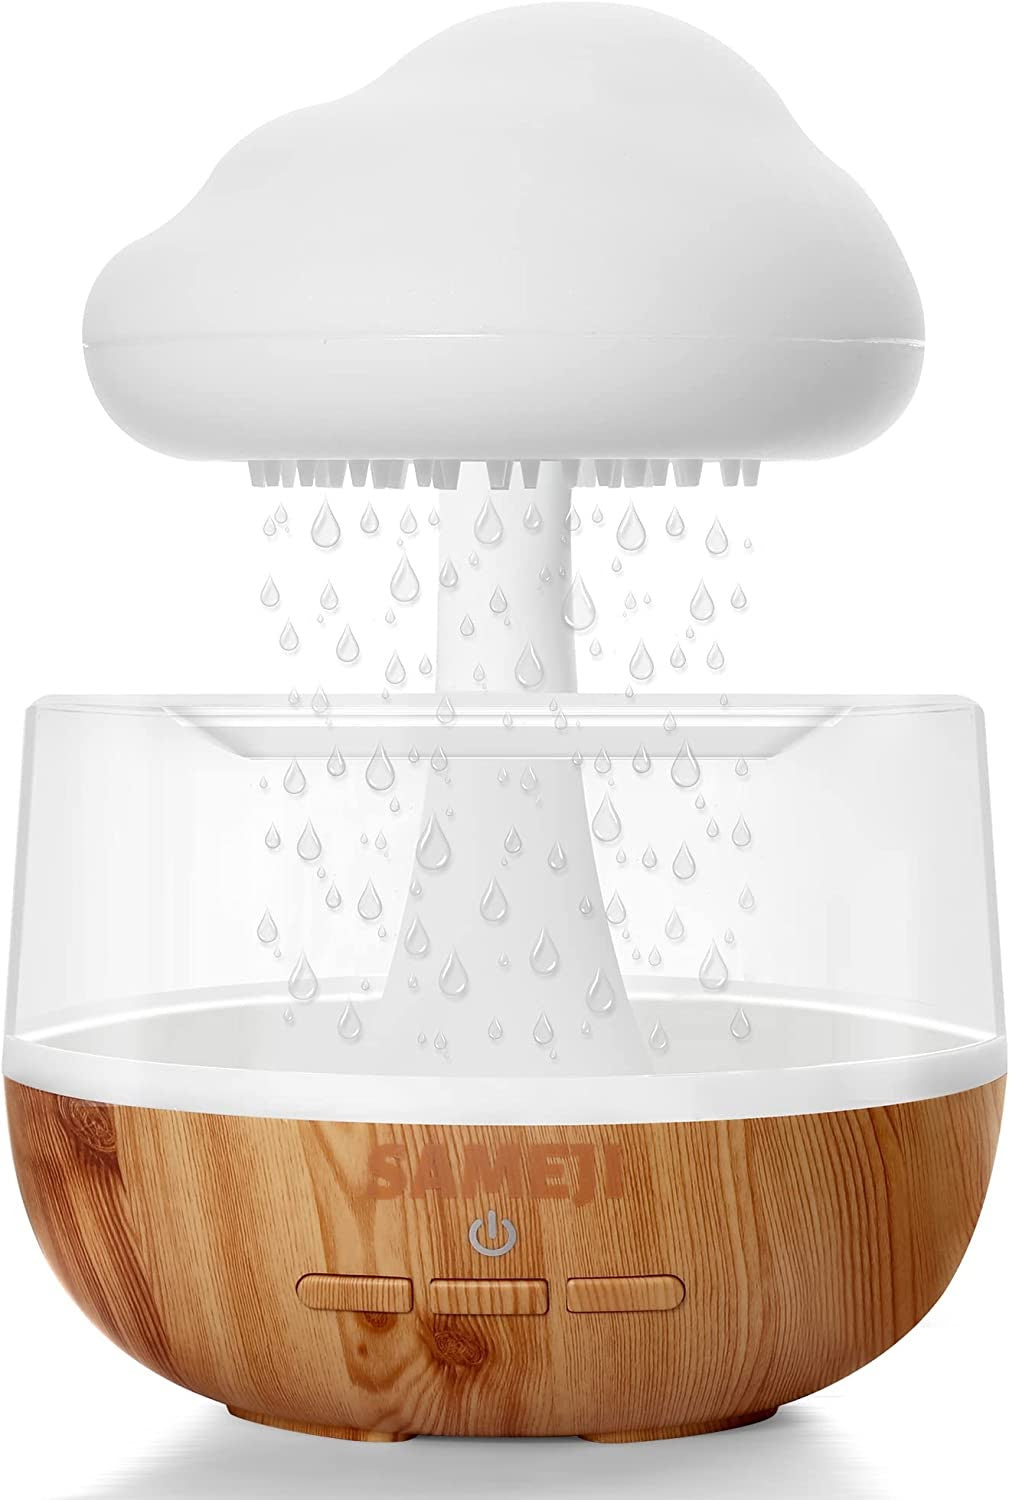 Rain Cloud Humidifier – ZenFog